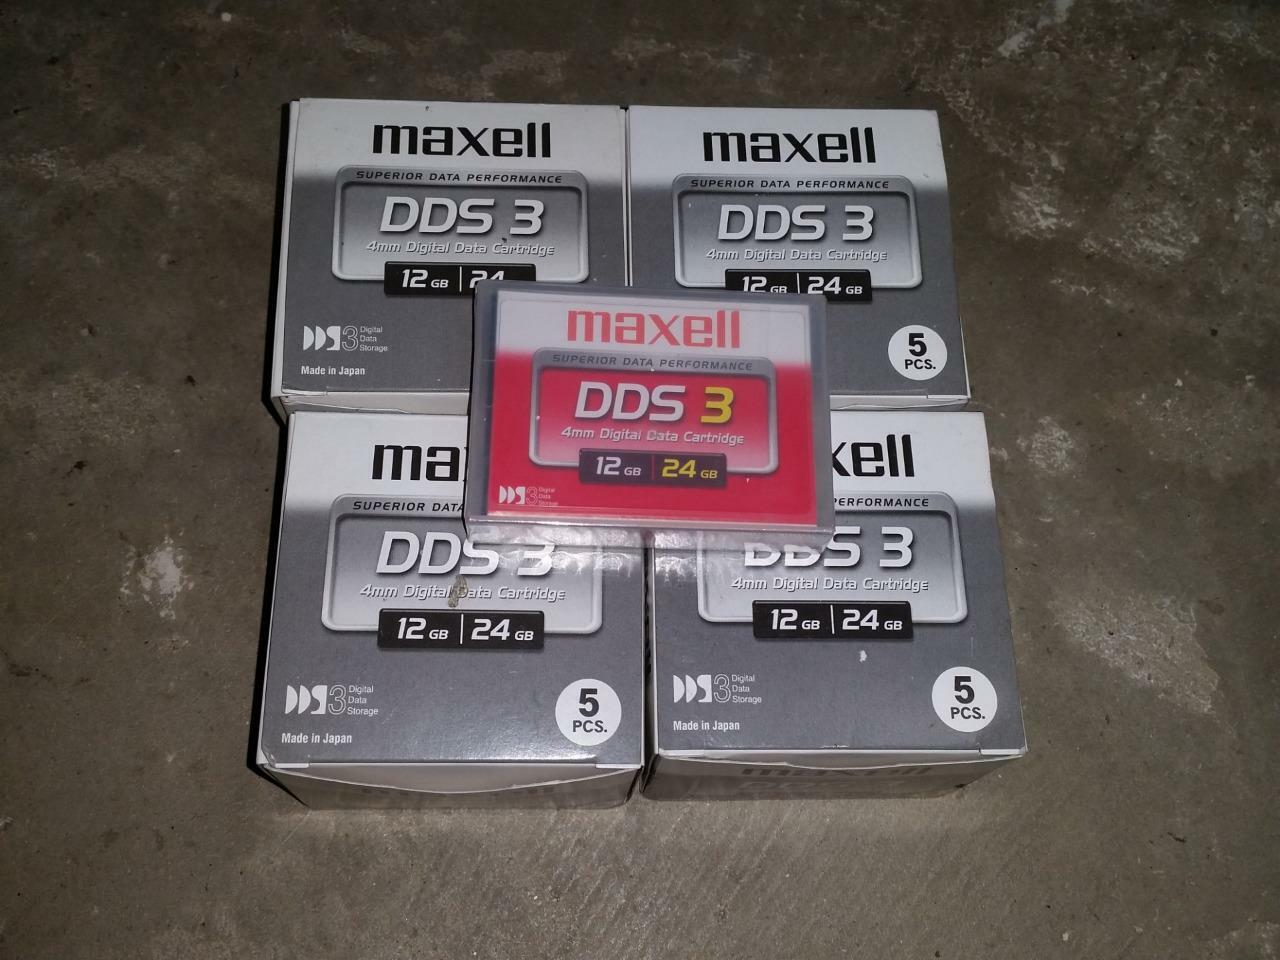 21qty MAXELL DDS 3 12GB 24GB 4mm Digital Data Cartridges NOS